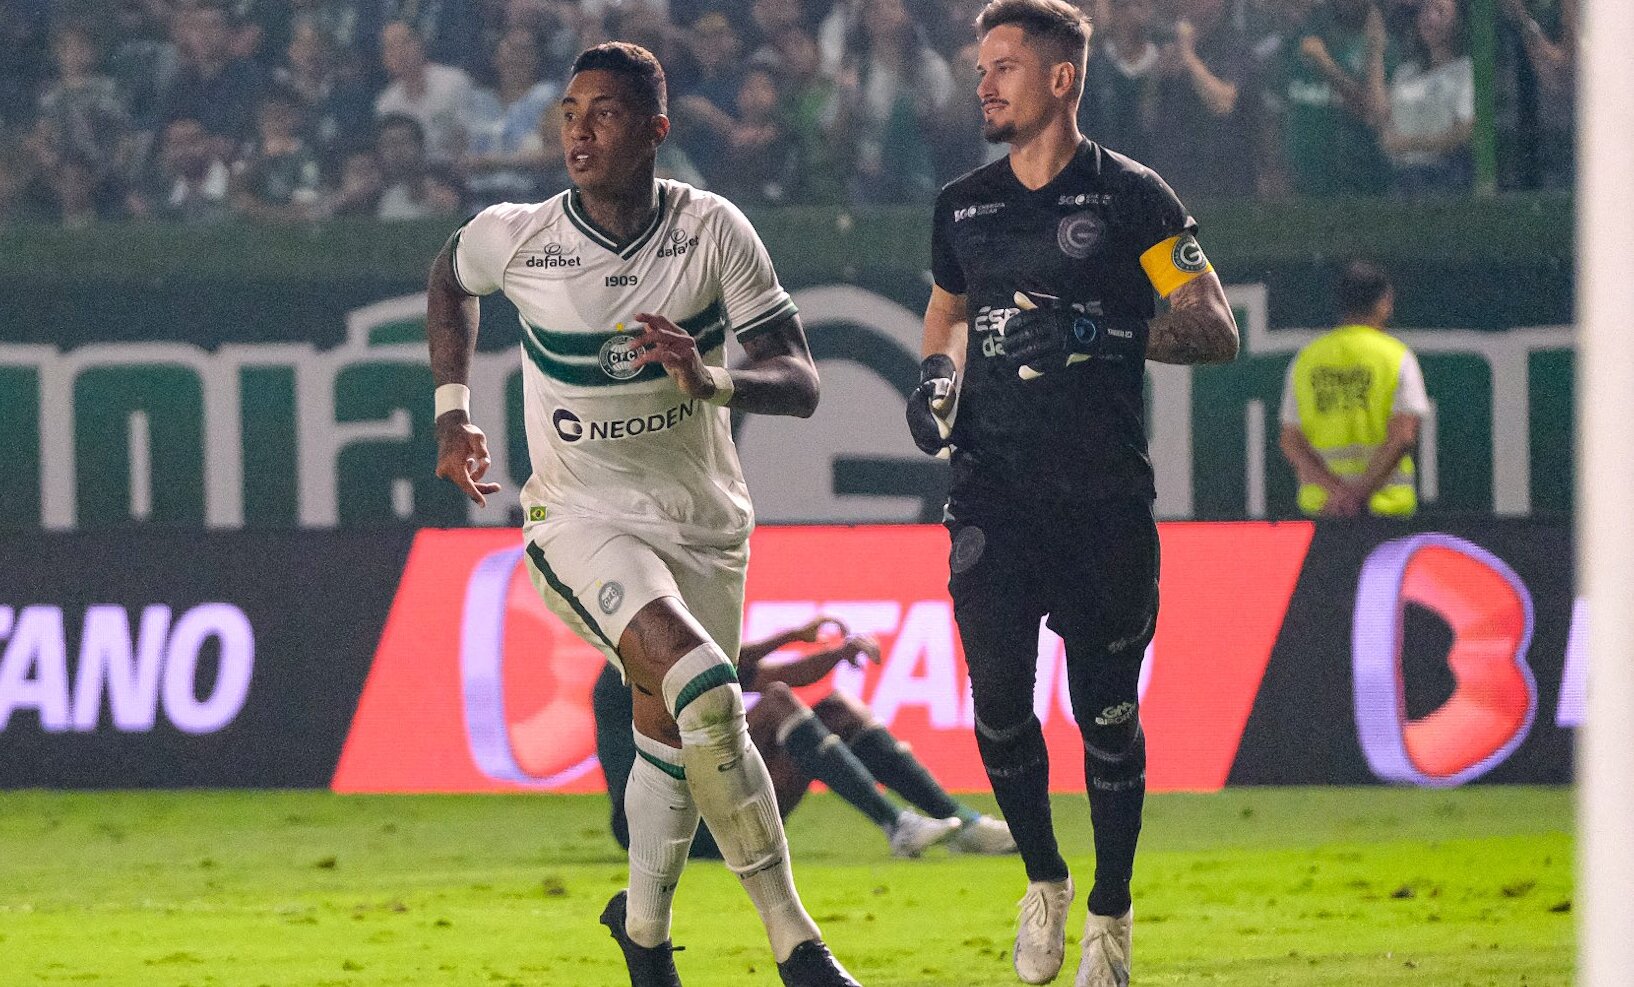 Alef Manga marca gol de "Pelé" (Foto: Divulgação/Coritiba)